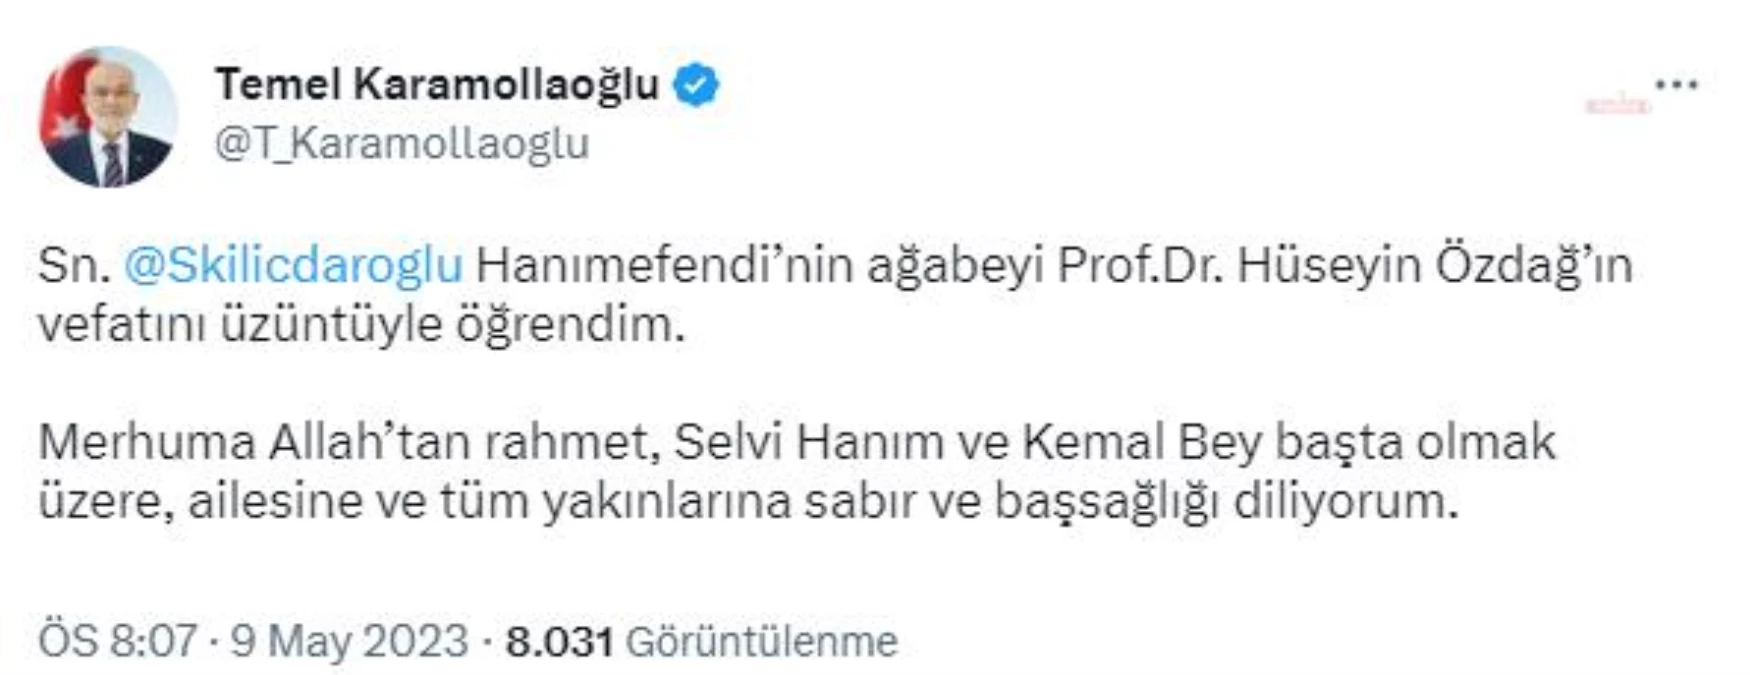 Saadet Partisi Genel Başkanı Temel Karamollaoğlu, Selvi Kılıçdaroğlu\'nun ağabeyi Hüseyin Özdağ\'ın vefatı nedeniyle başsağlığı mesajı yayınladı